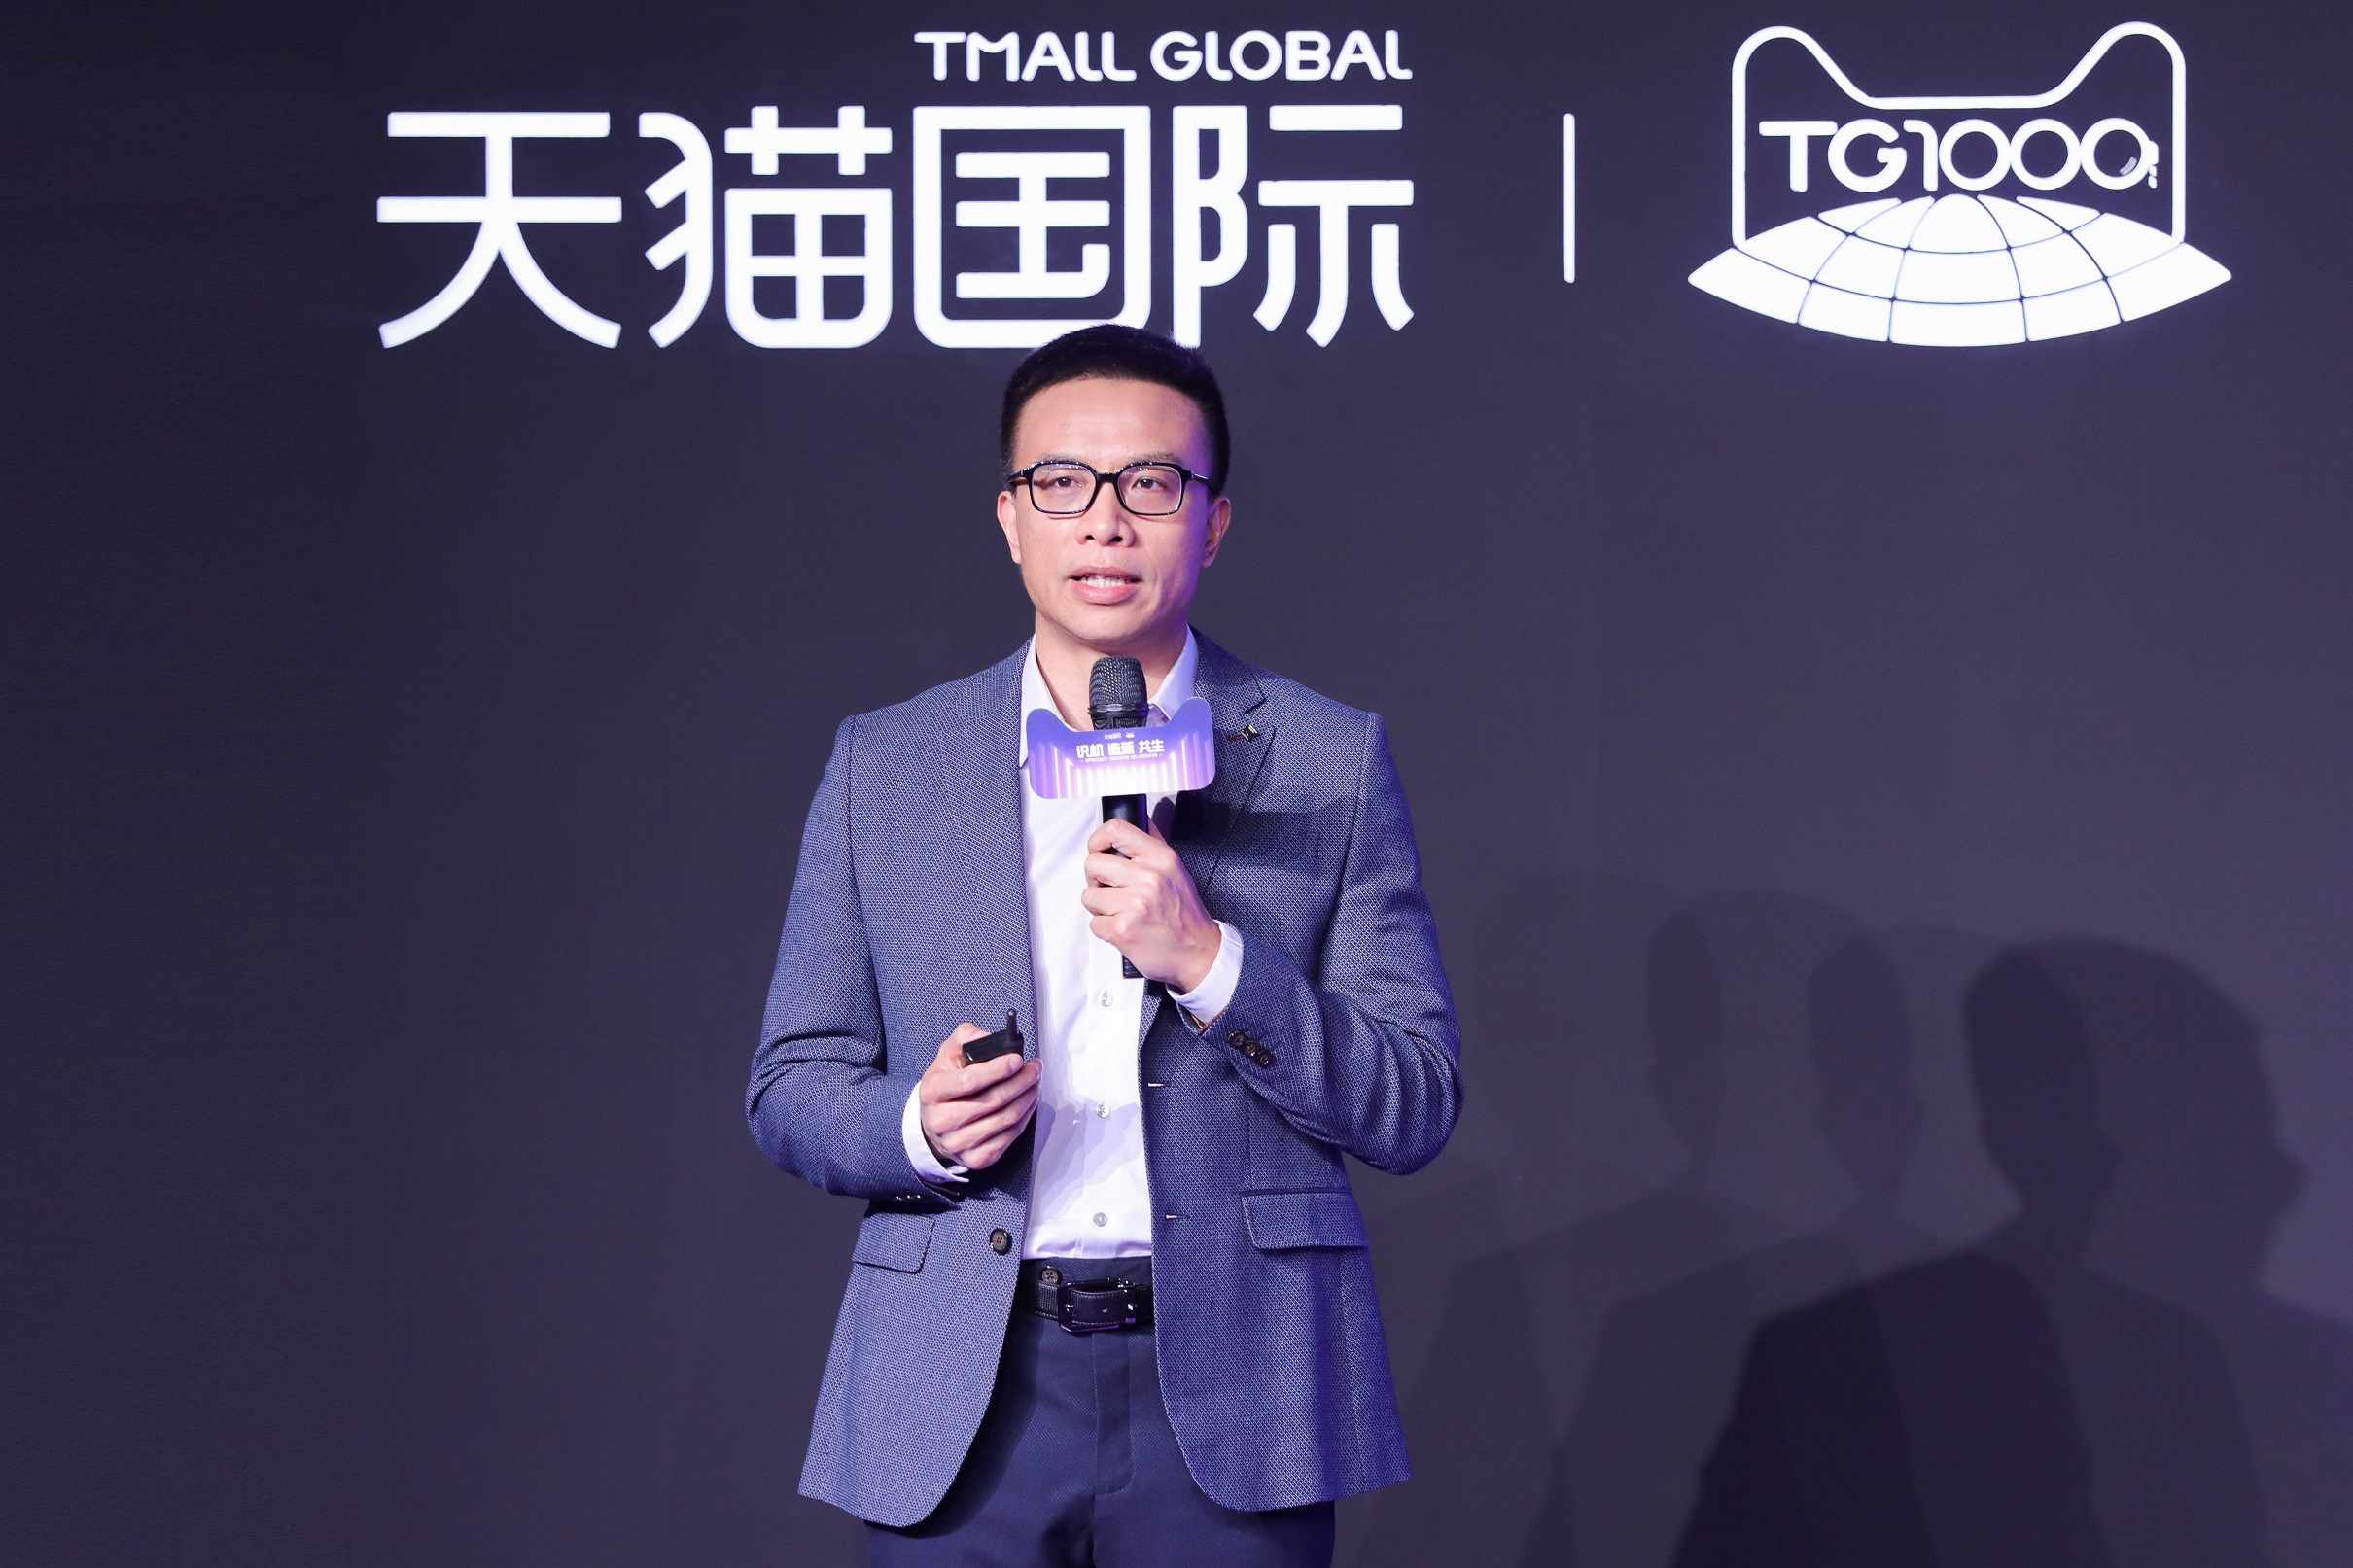 ทีมอลล์ โกลบอล เตรียมสนับสนุนแบรนด์ต่างประเทศเข้าสู่ตลาดจีน ตั้งเป้าหนุนแบรนด์ใหม่ 1,000 แบรนด์ ภายใน12